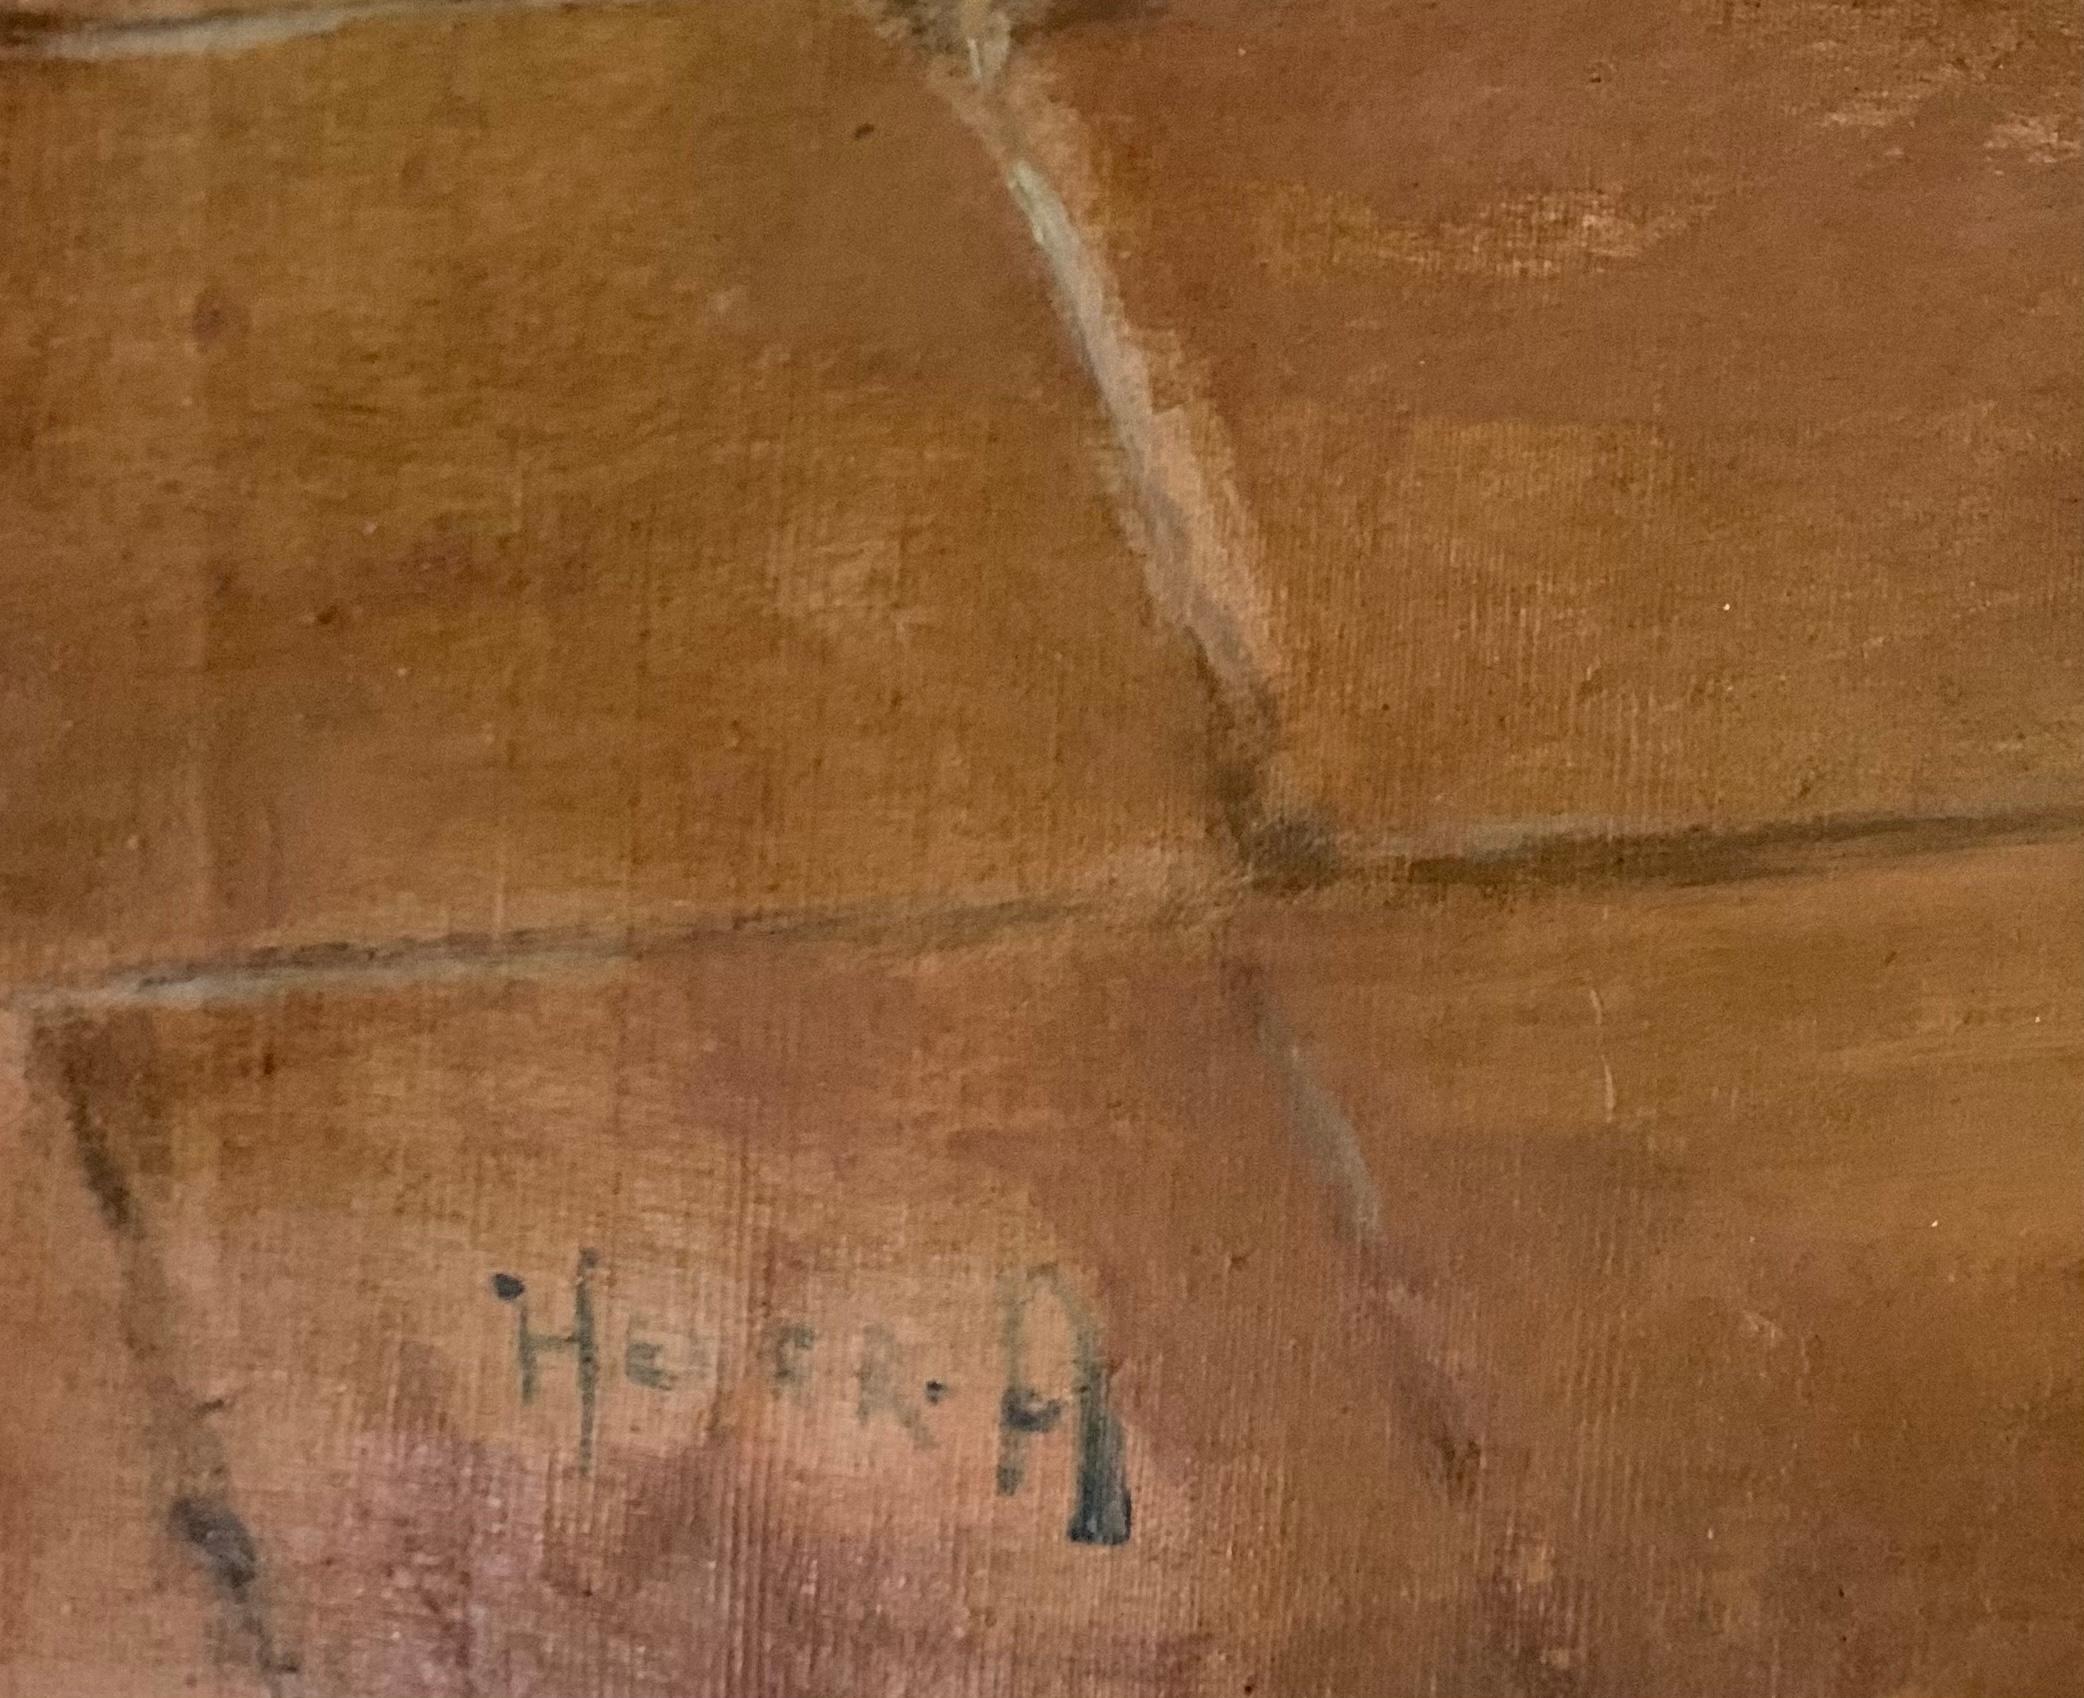 Chat brun et blanc buvant du lait dans un bol, par Arthur Heyer 

Huile sur toile
21.5 x 25.5 pouces

Arthur Heyer est né à Haarhausen. Il a étudié à l'école supérieure des arts appliqués de Berlin. En 1896, il s'exile à Rakospalota, près de